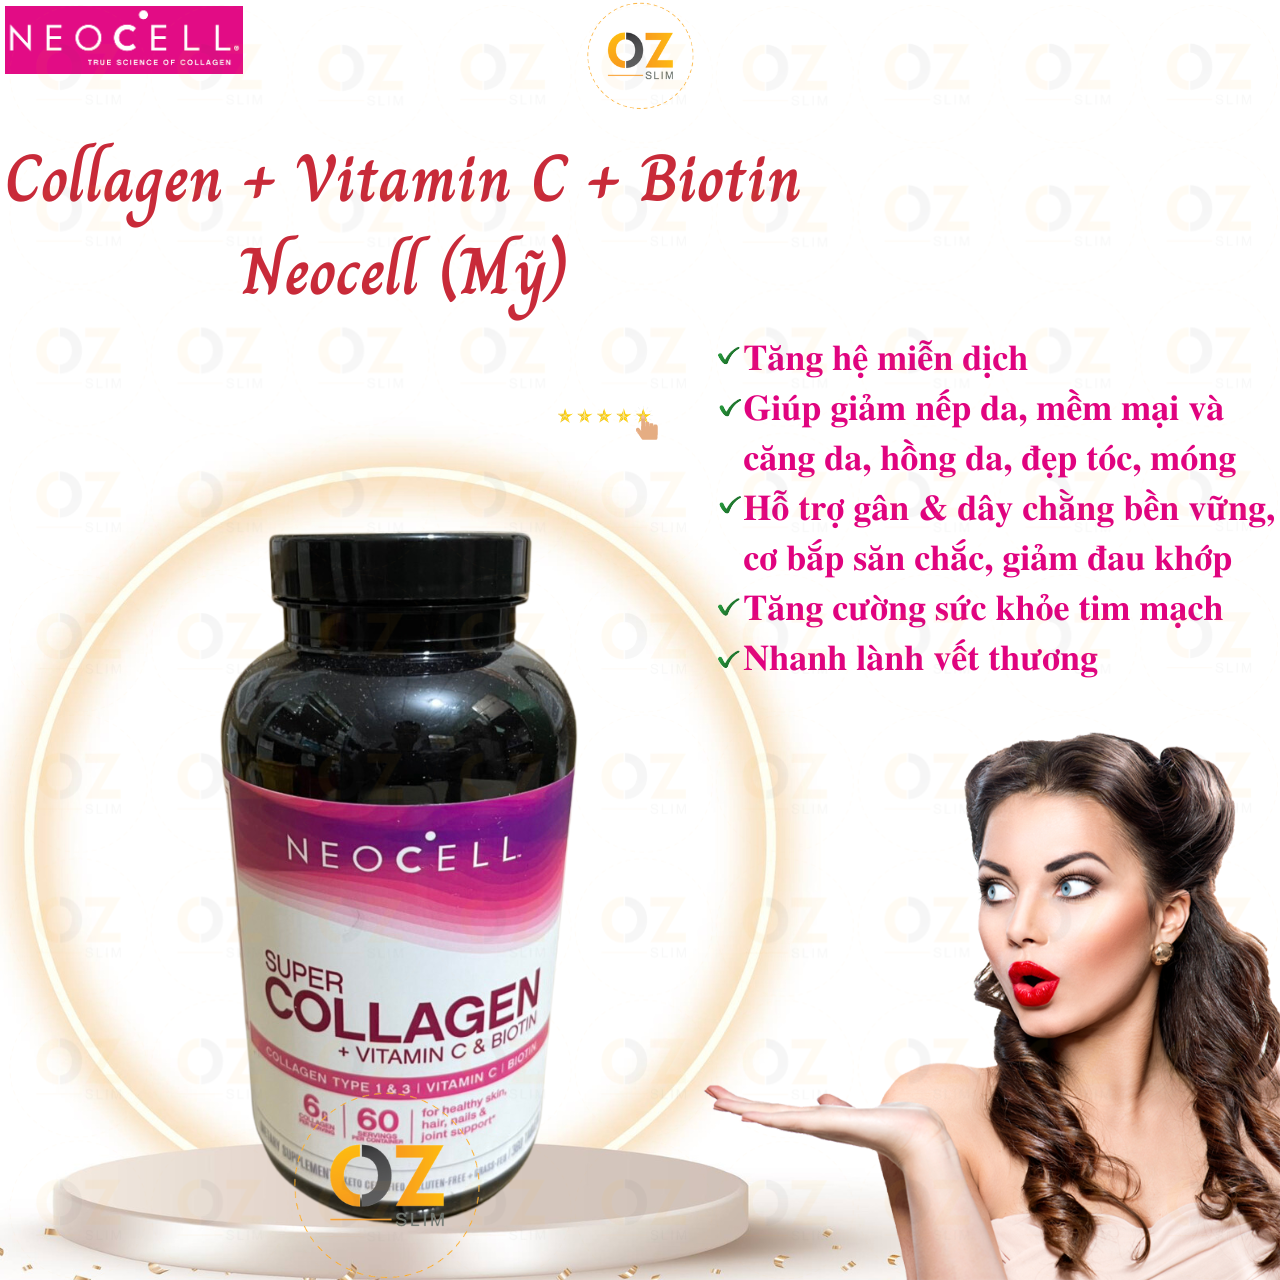 Collagen Neocell Types 1 & 3 Mỹ giúp hỗ trợ xương khớp, giảm nhăn da, làm đẹp da, tóc và móng - OZ Slim Store